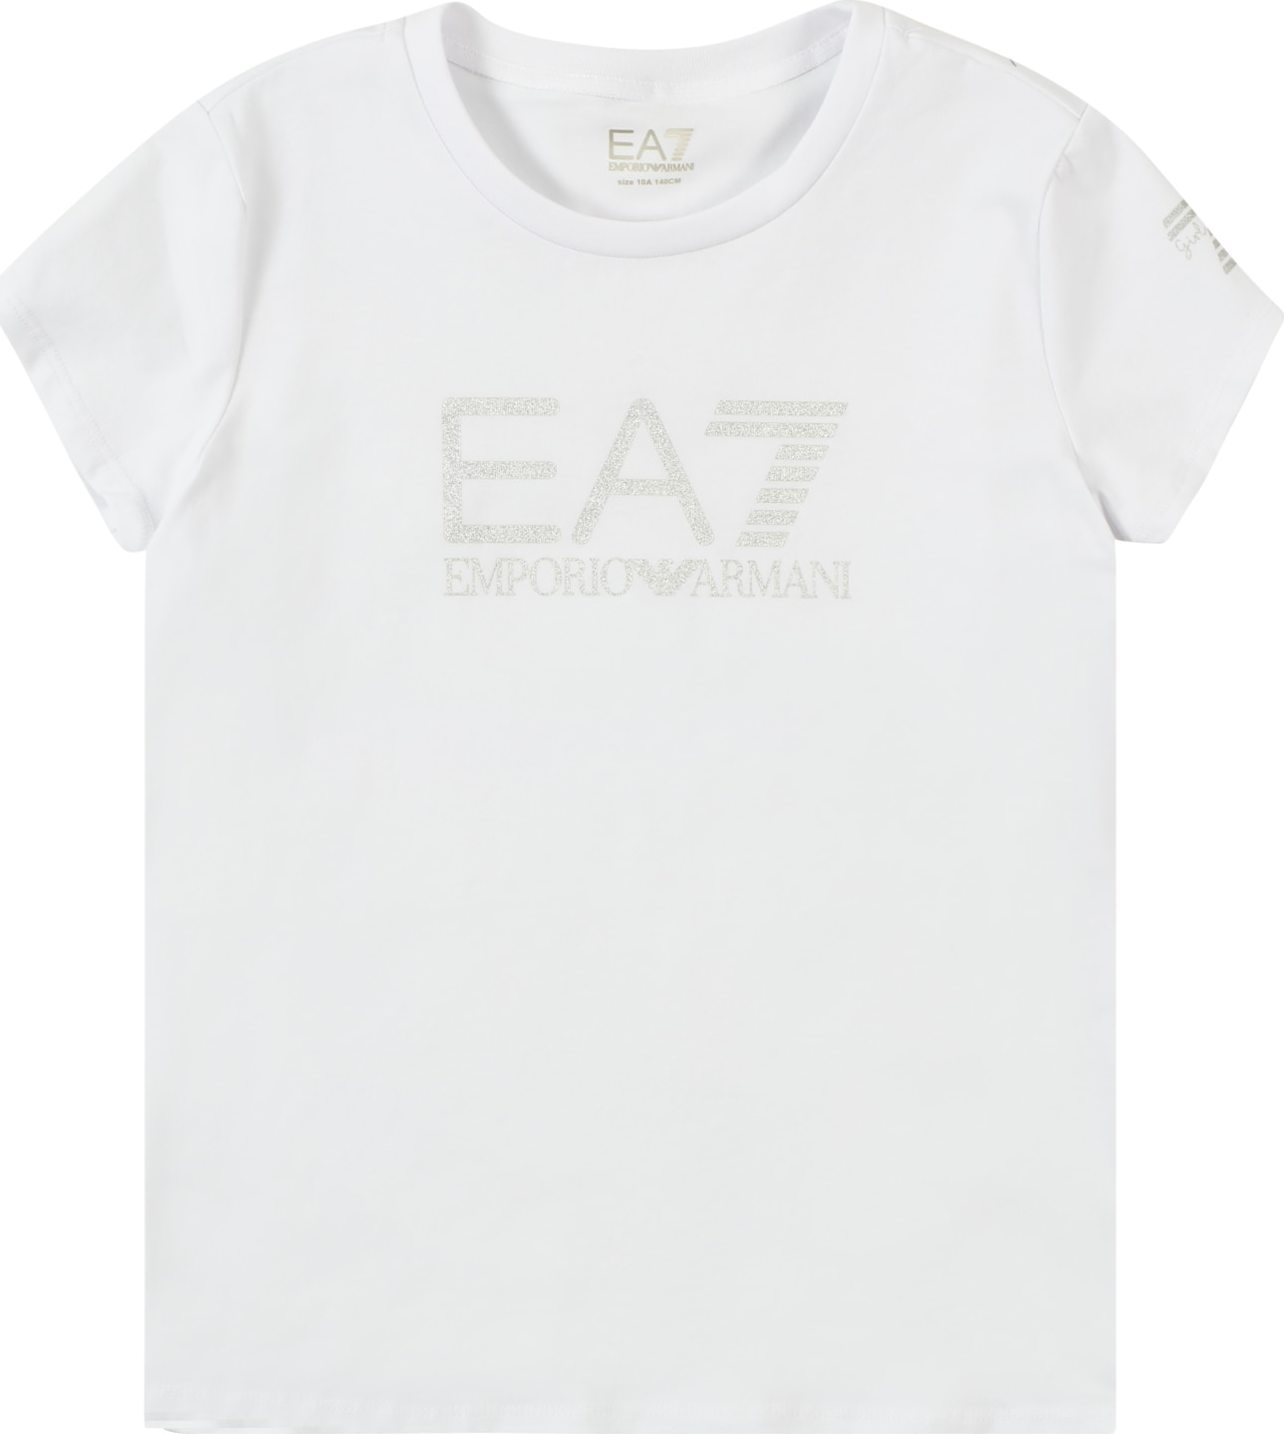 Tričko EA7 Emporio Armani stříbrná / bílá